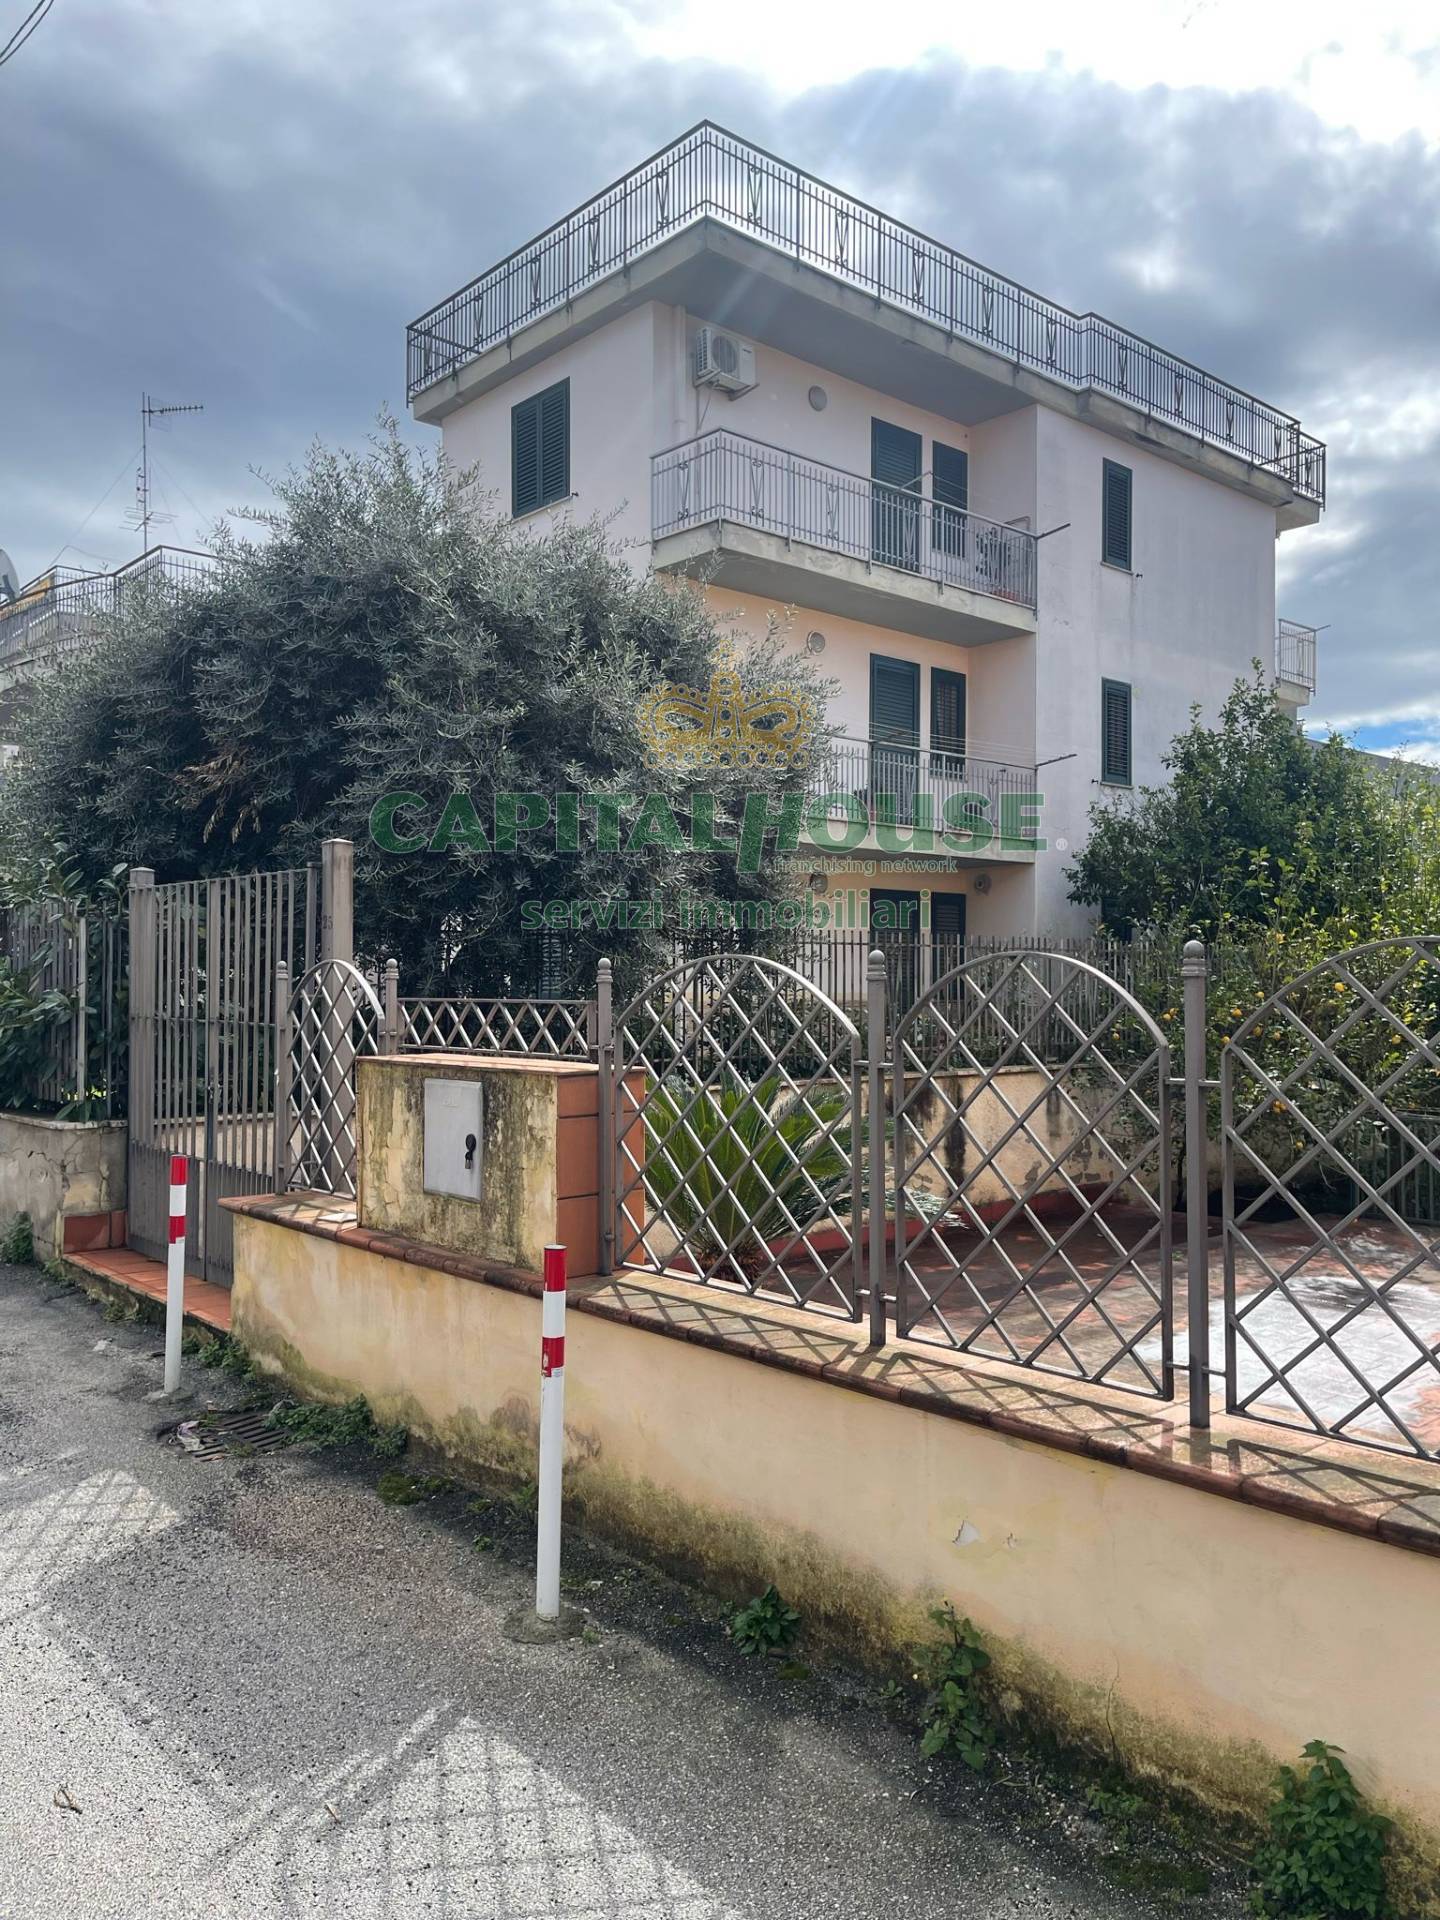 Appartamento in vendita a Sperone, 3 locali, prezzo € 120.000 | PortaleAgenzieImmobiliari.it